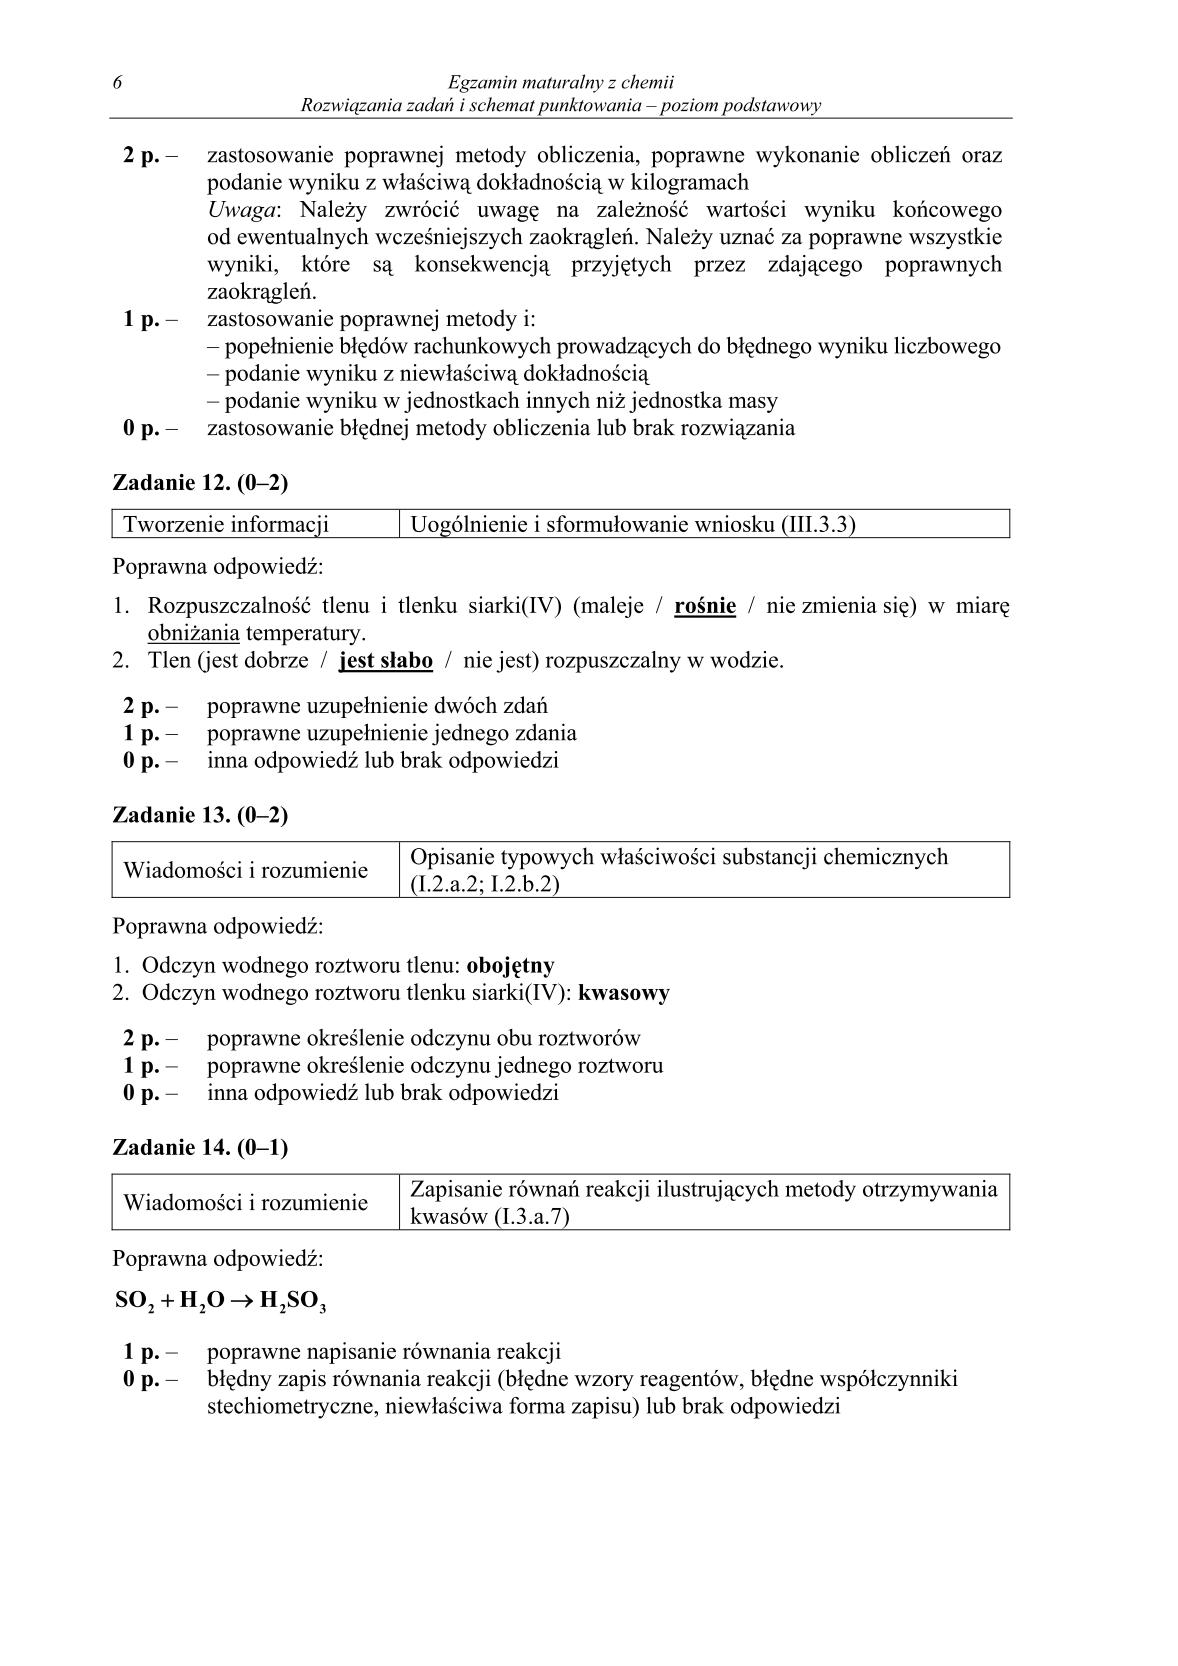 odpowiedzi-chemia-poziom-podstawowy-matura-2014-str.6